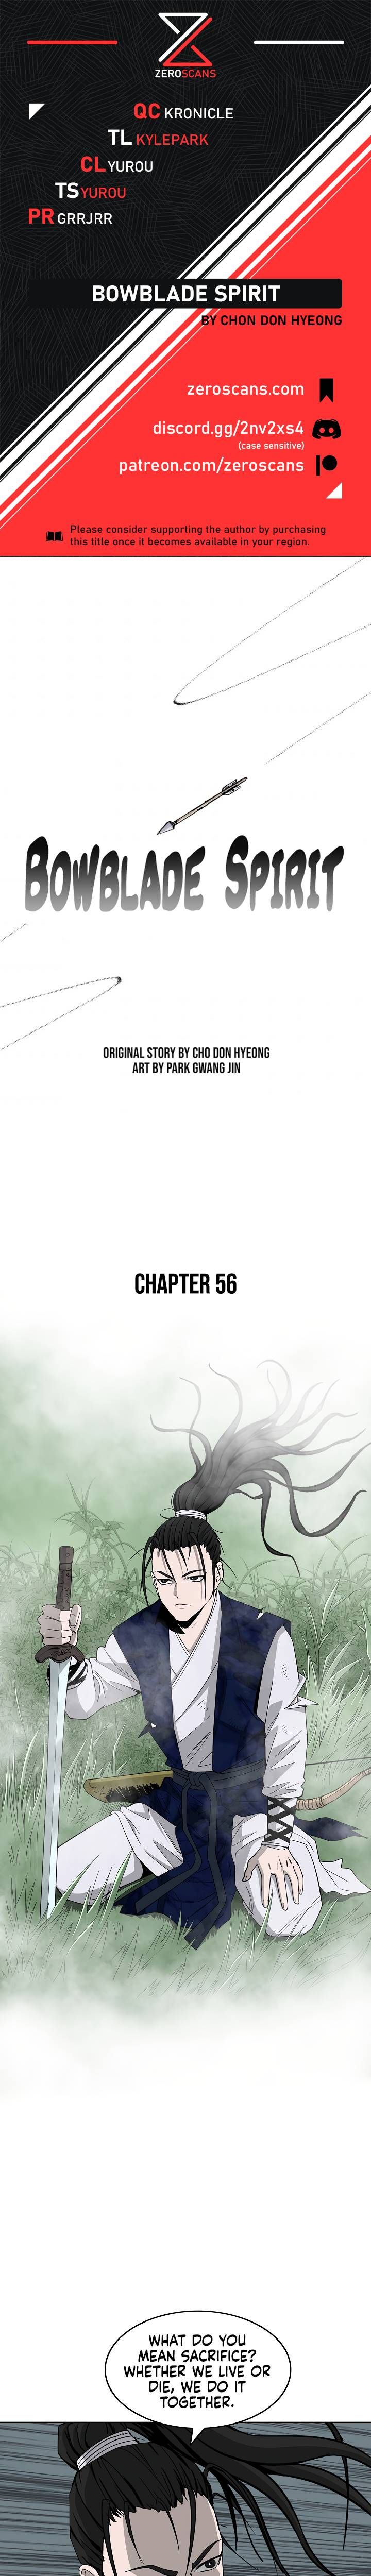 Bowblade Spirit Chapter 56 page 1